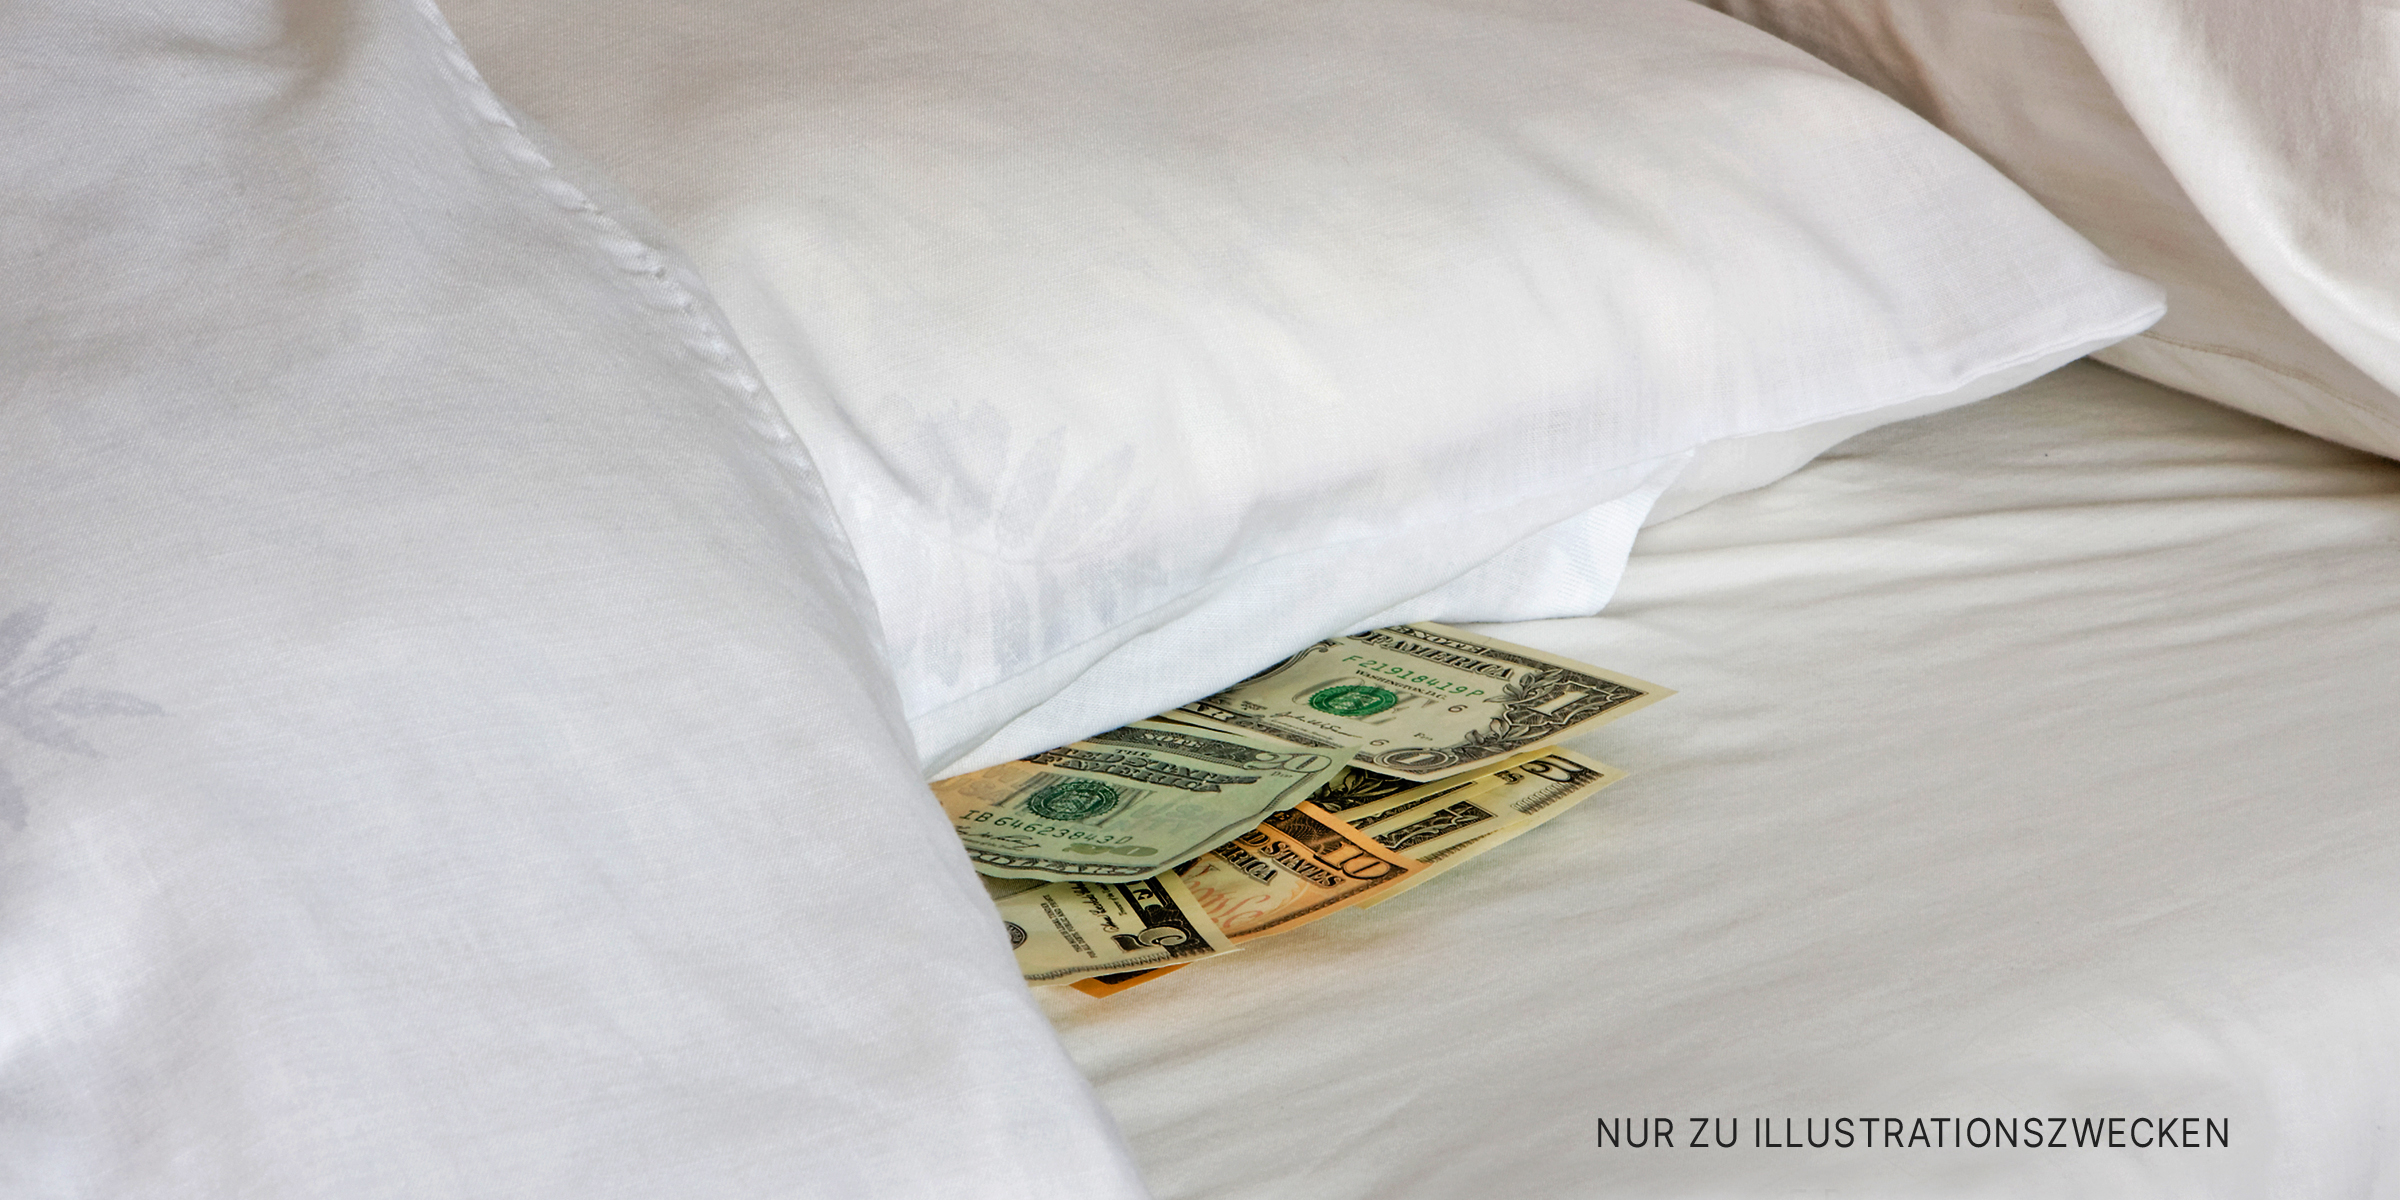 Geld unterm Kopfkissen versteckt. | Quelle: Shutterstock